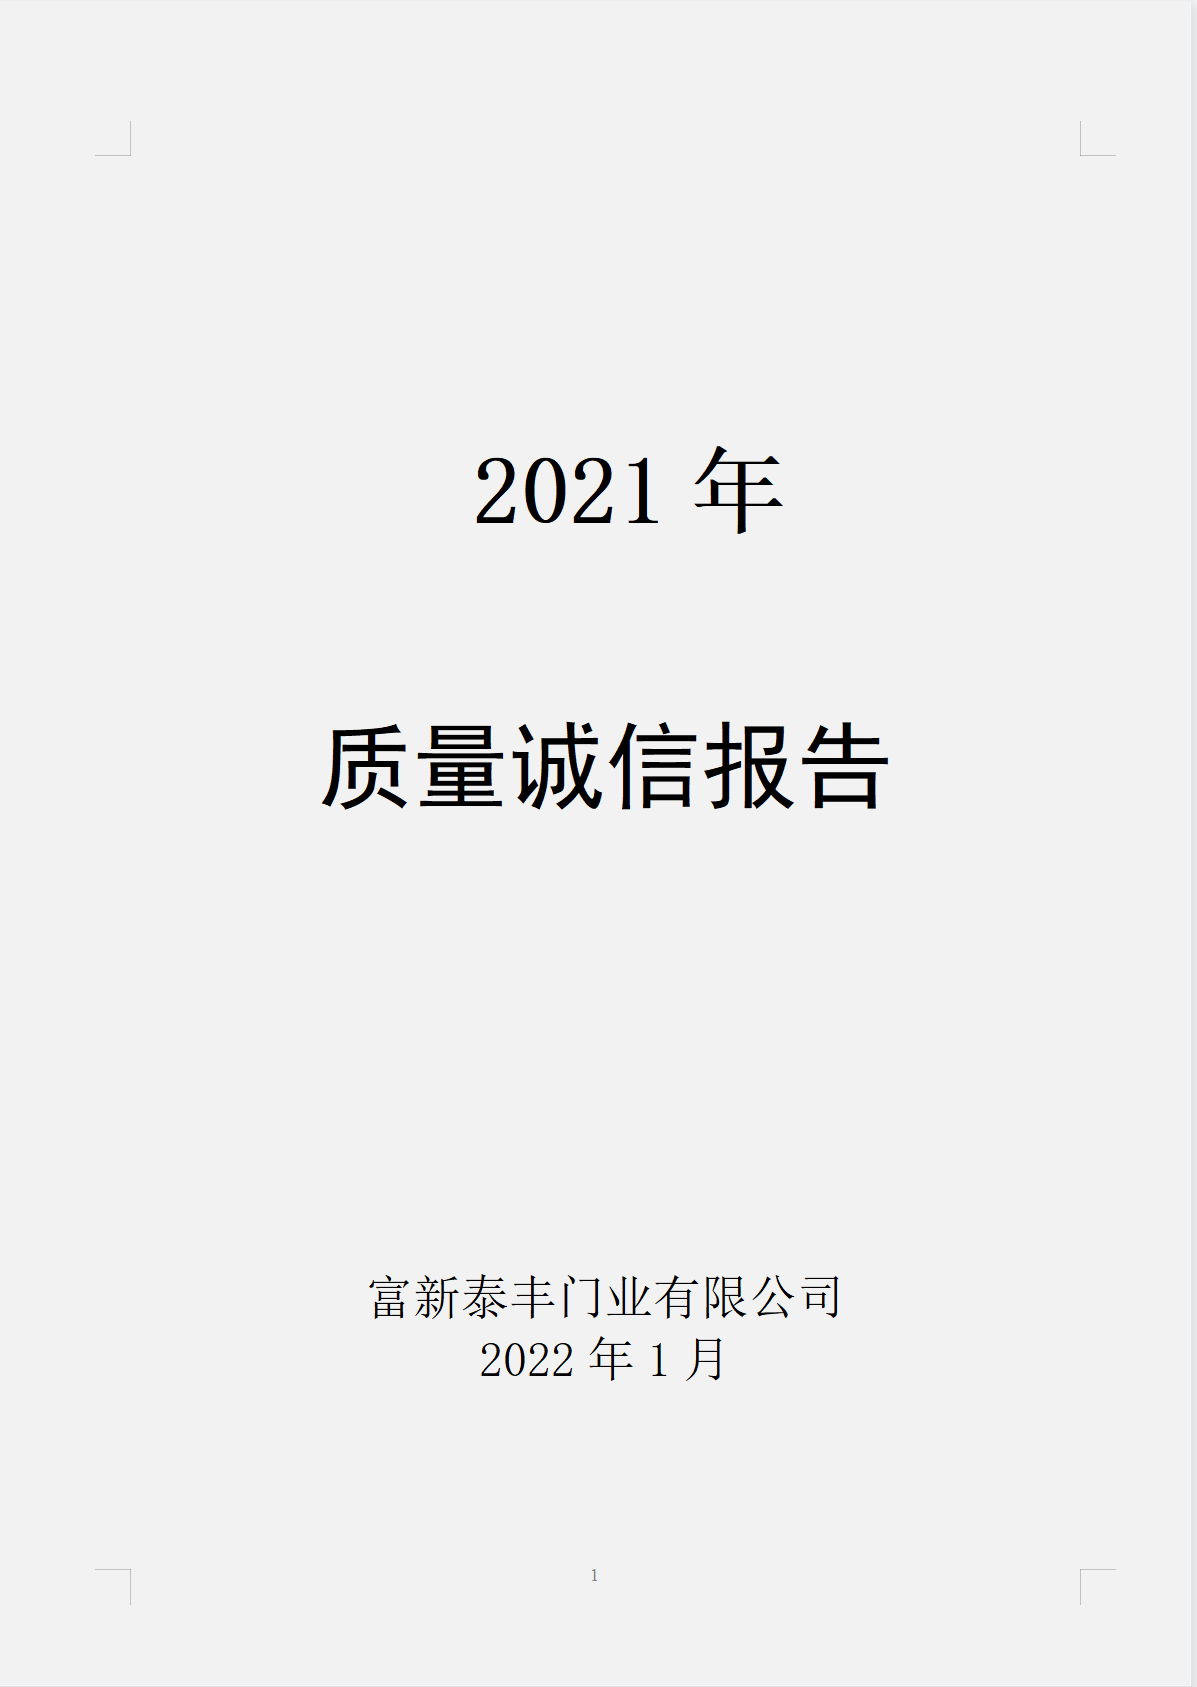 富新泰丰门业有限公司2021年度《质量诚信报告》书